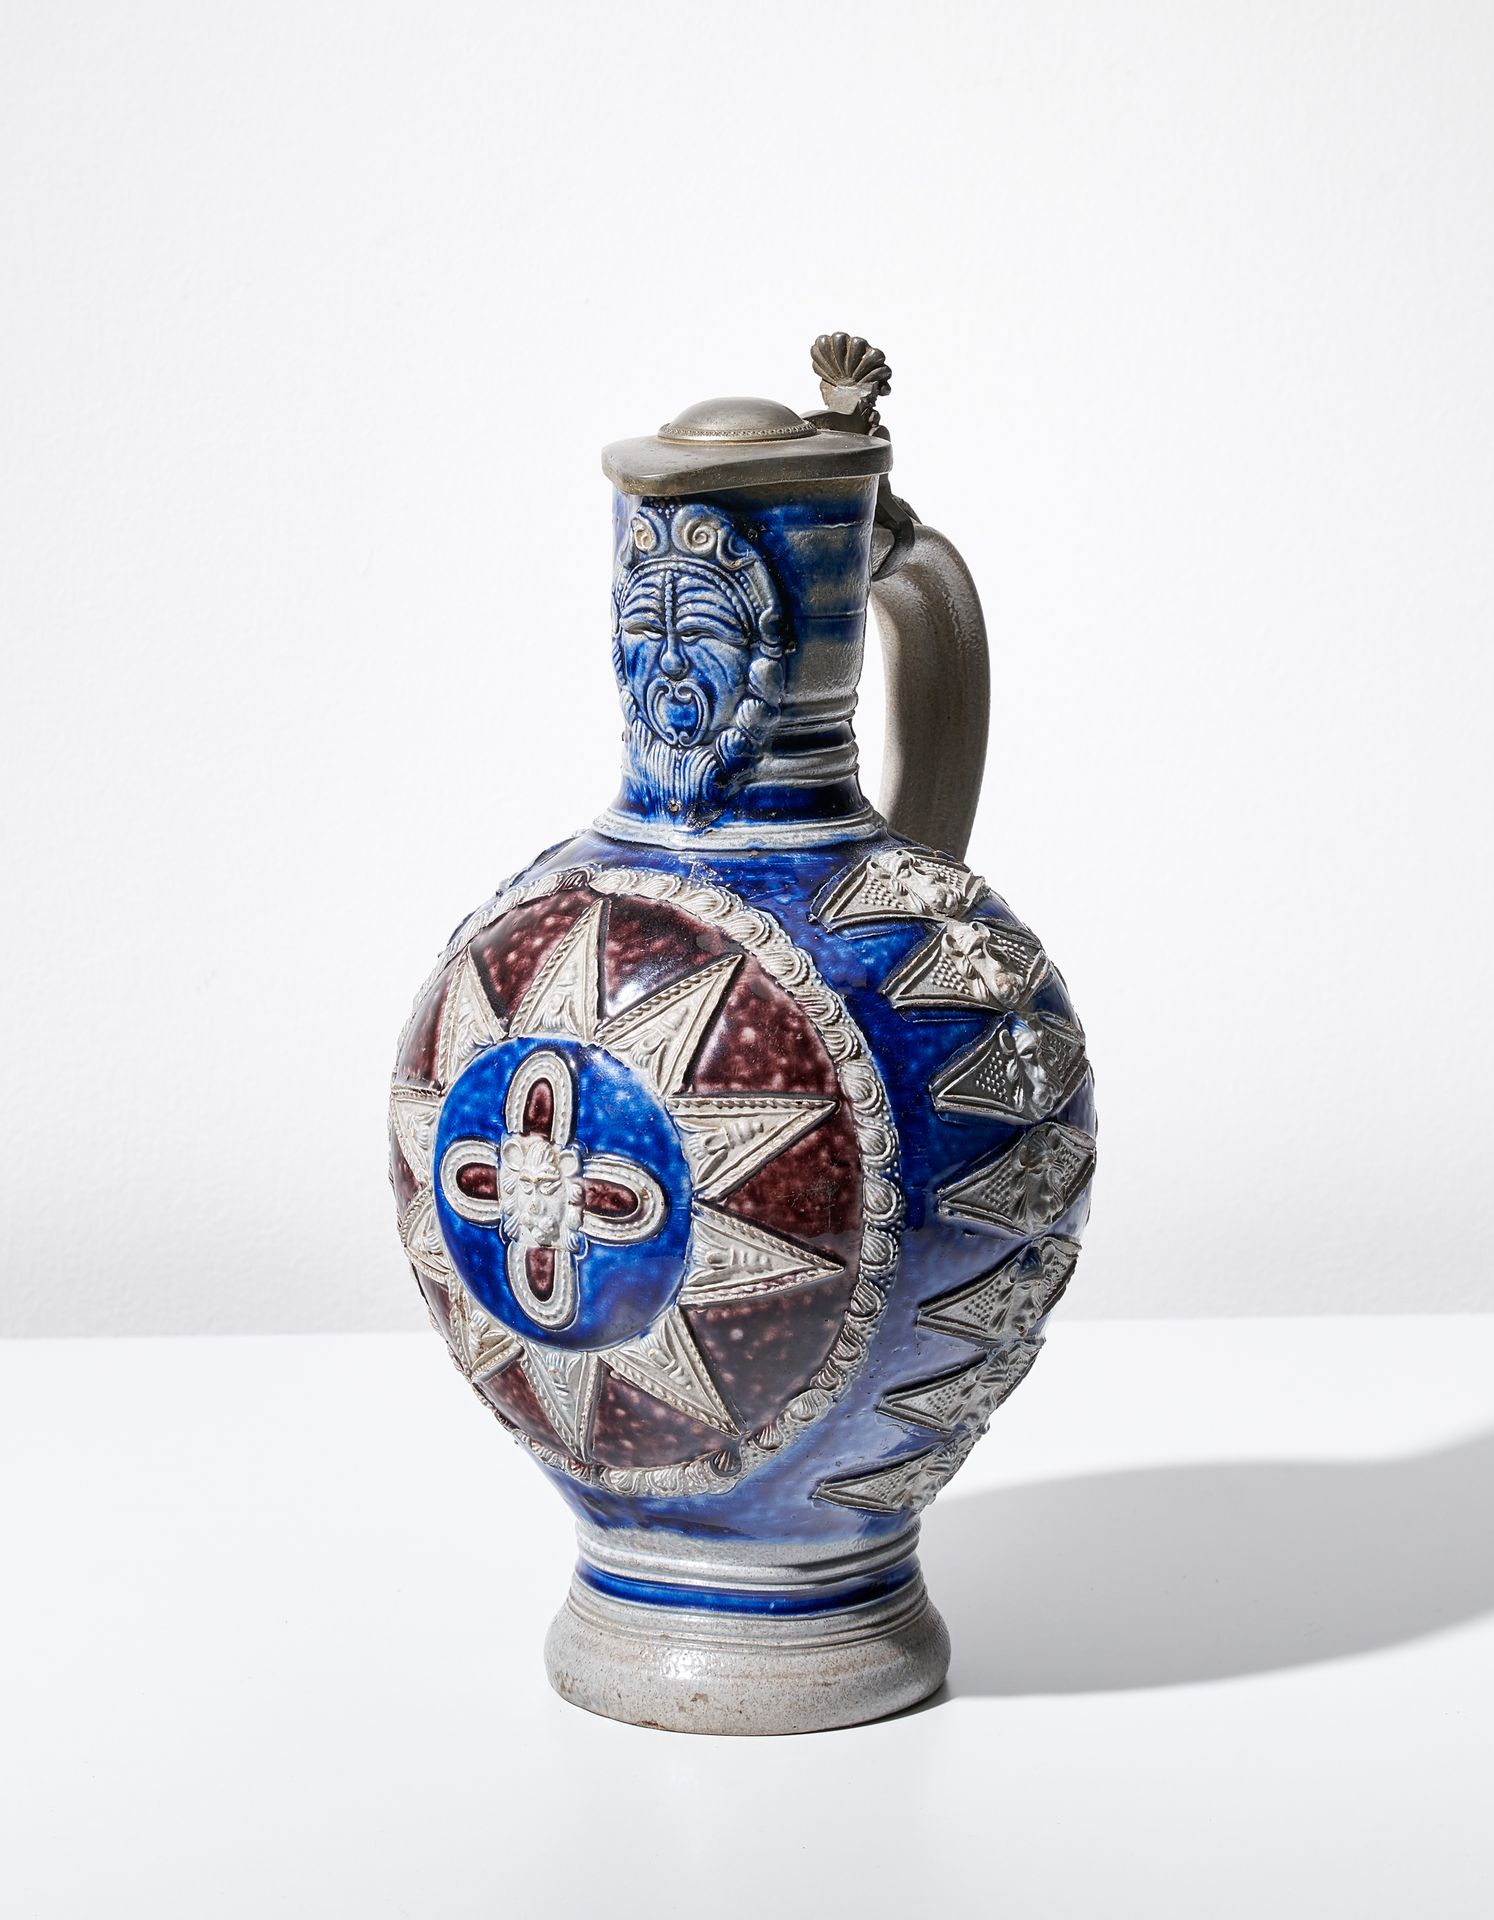 Null 釉面陶器壶

维斯特瓦尔德，17世纪第三季度

多色处理，颈部有马斯卡龙，壶身有星形和装饰。

高：27,5厘米